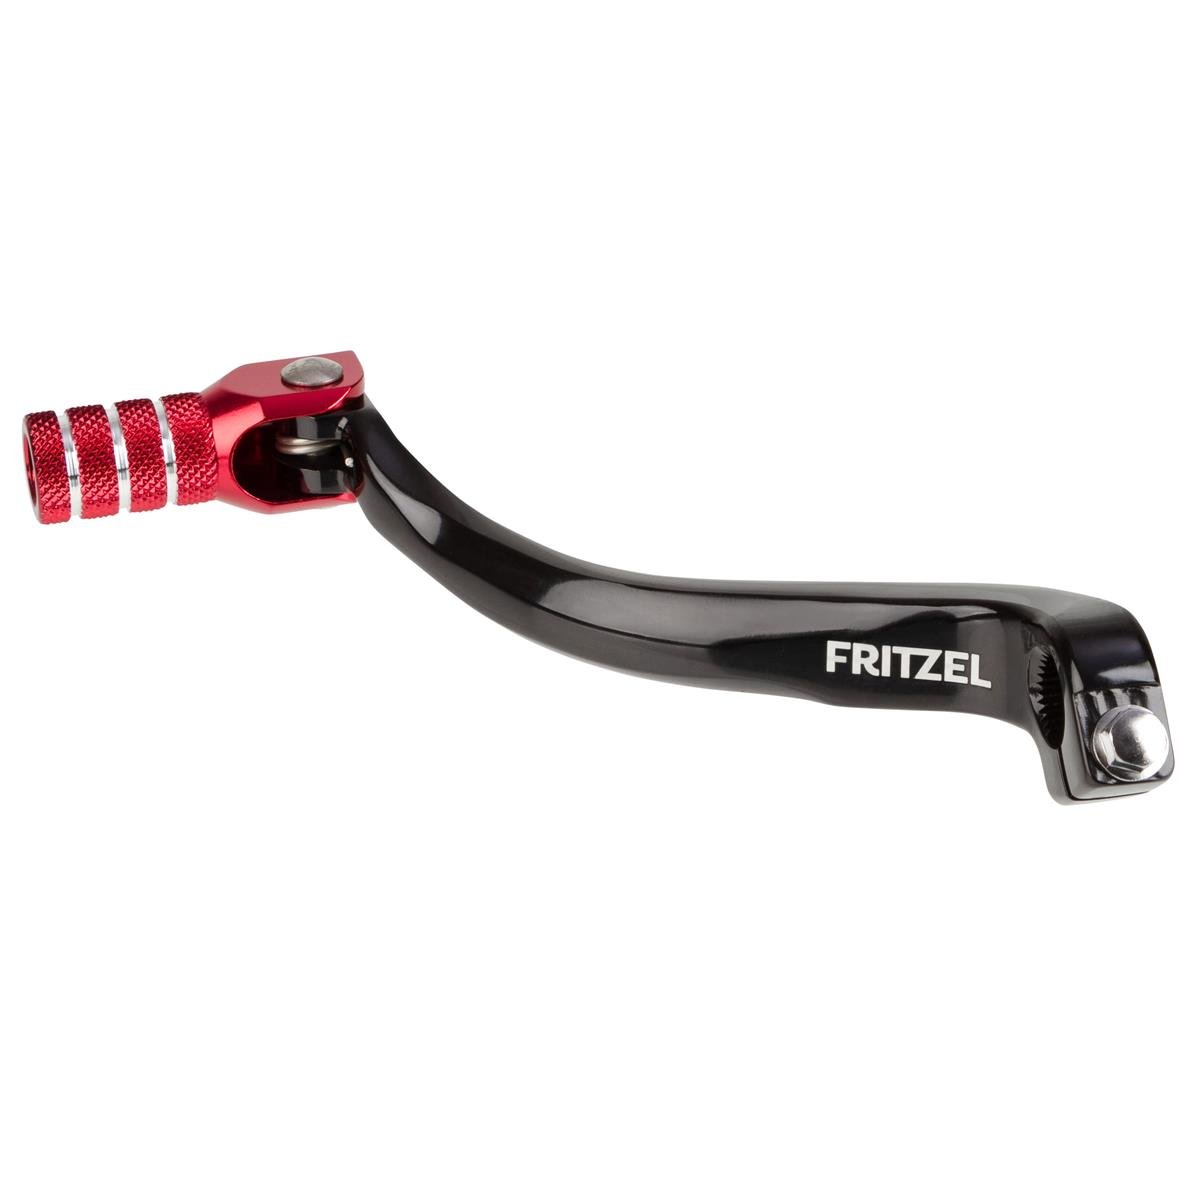 FRITZEL Shift Lever Wellenreiter Honda CRF 250 10-17, Black/Red